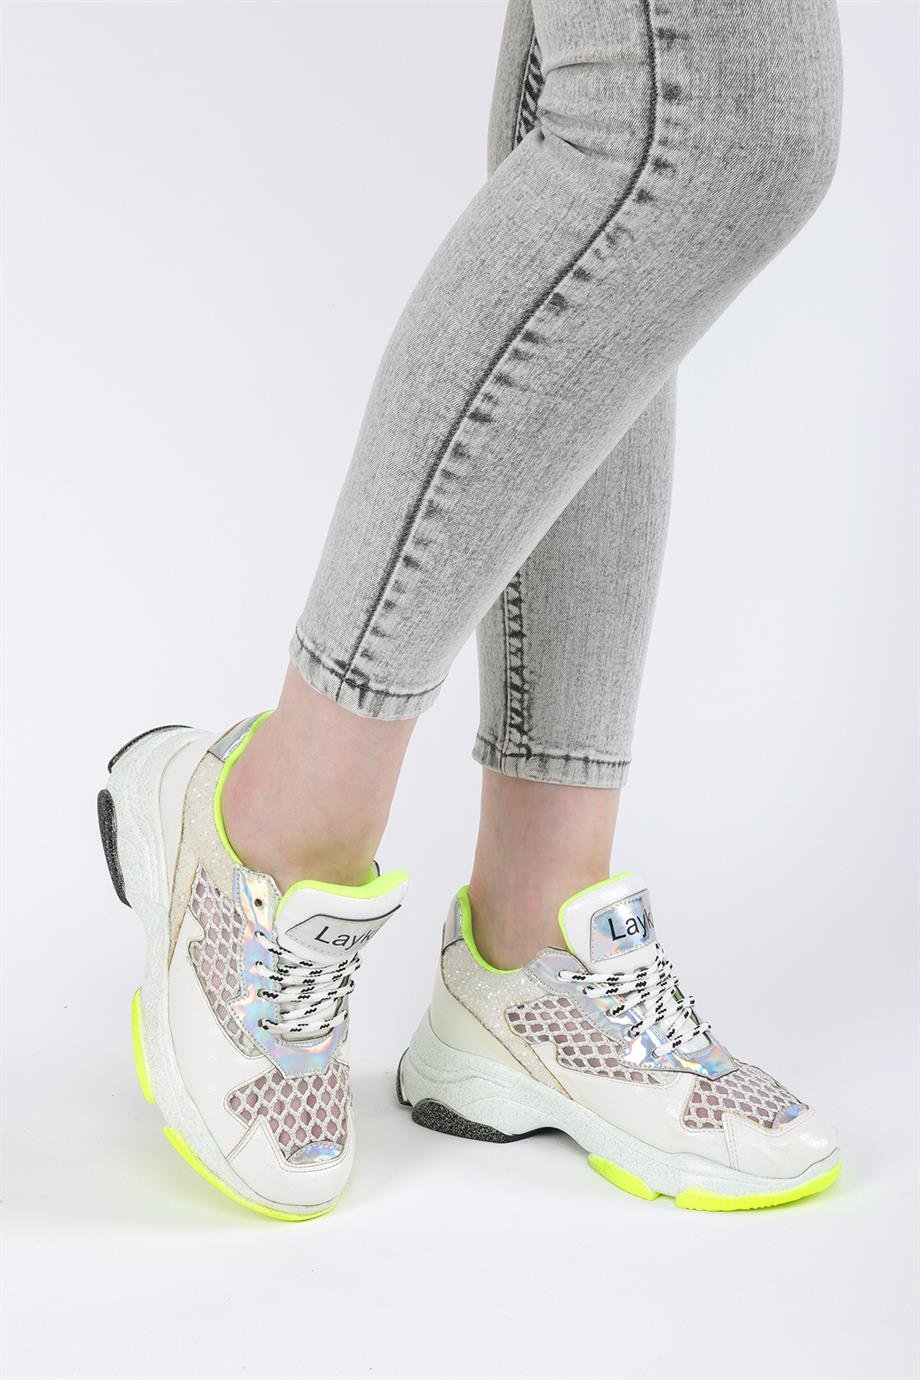 Layki Segavia Beyaz Renkli Kadın Spor Yürüyüş Ayakkabısı